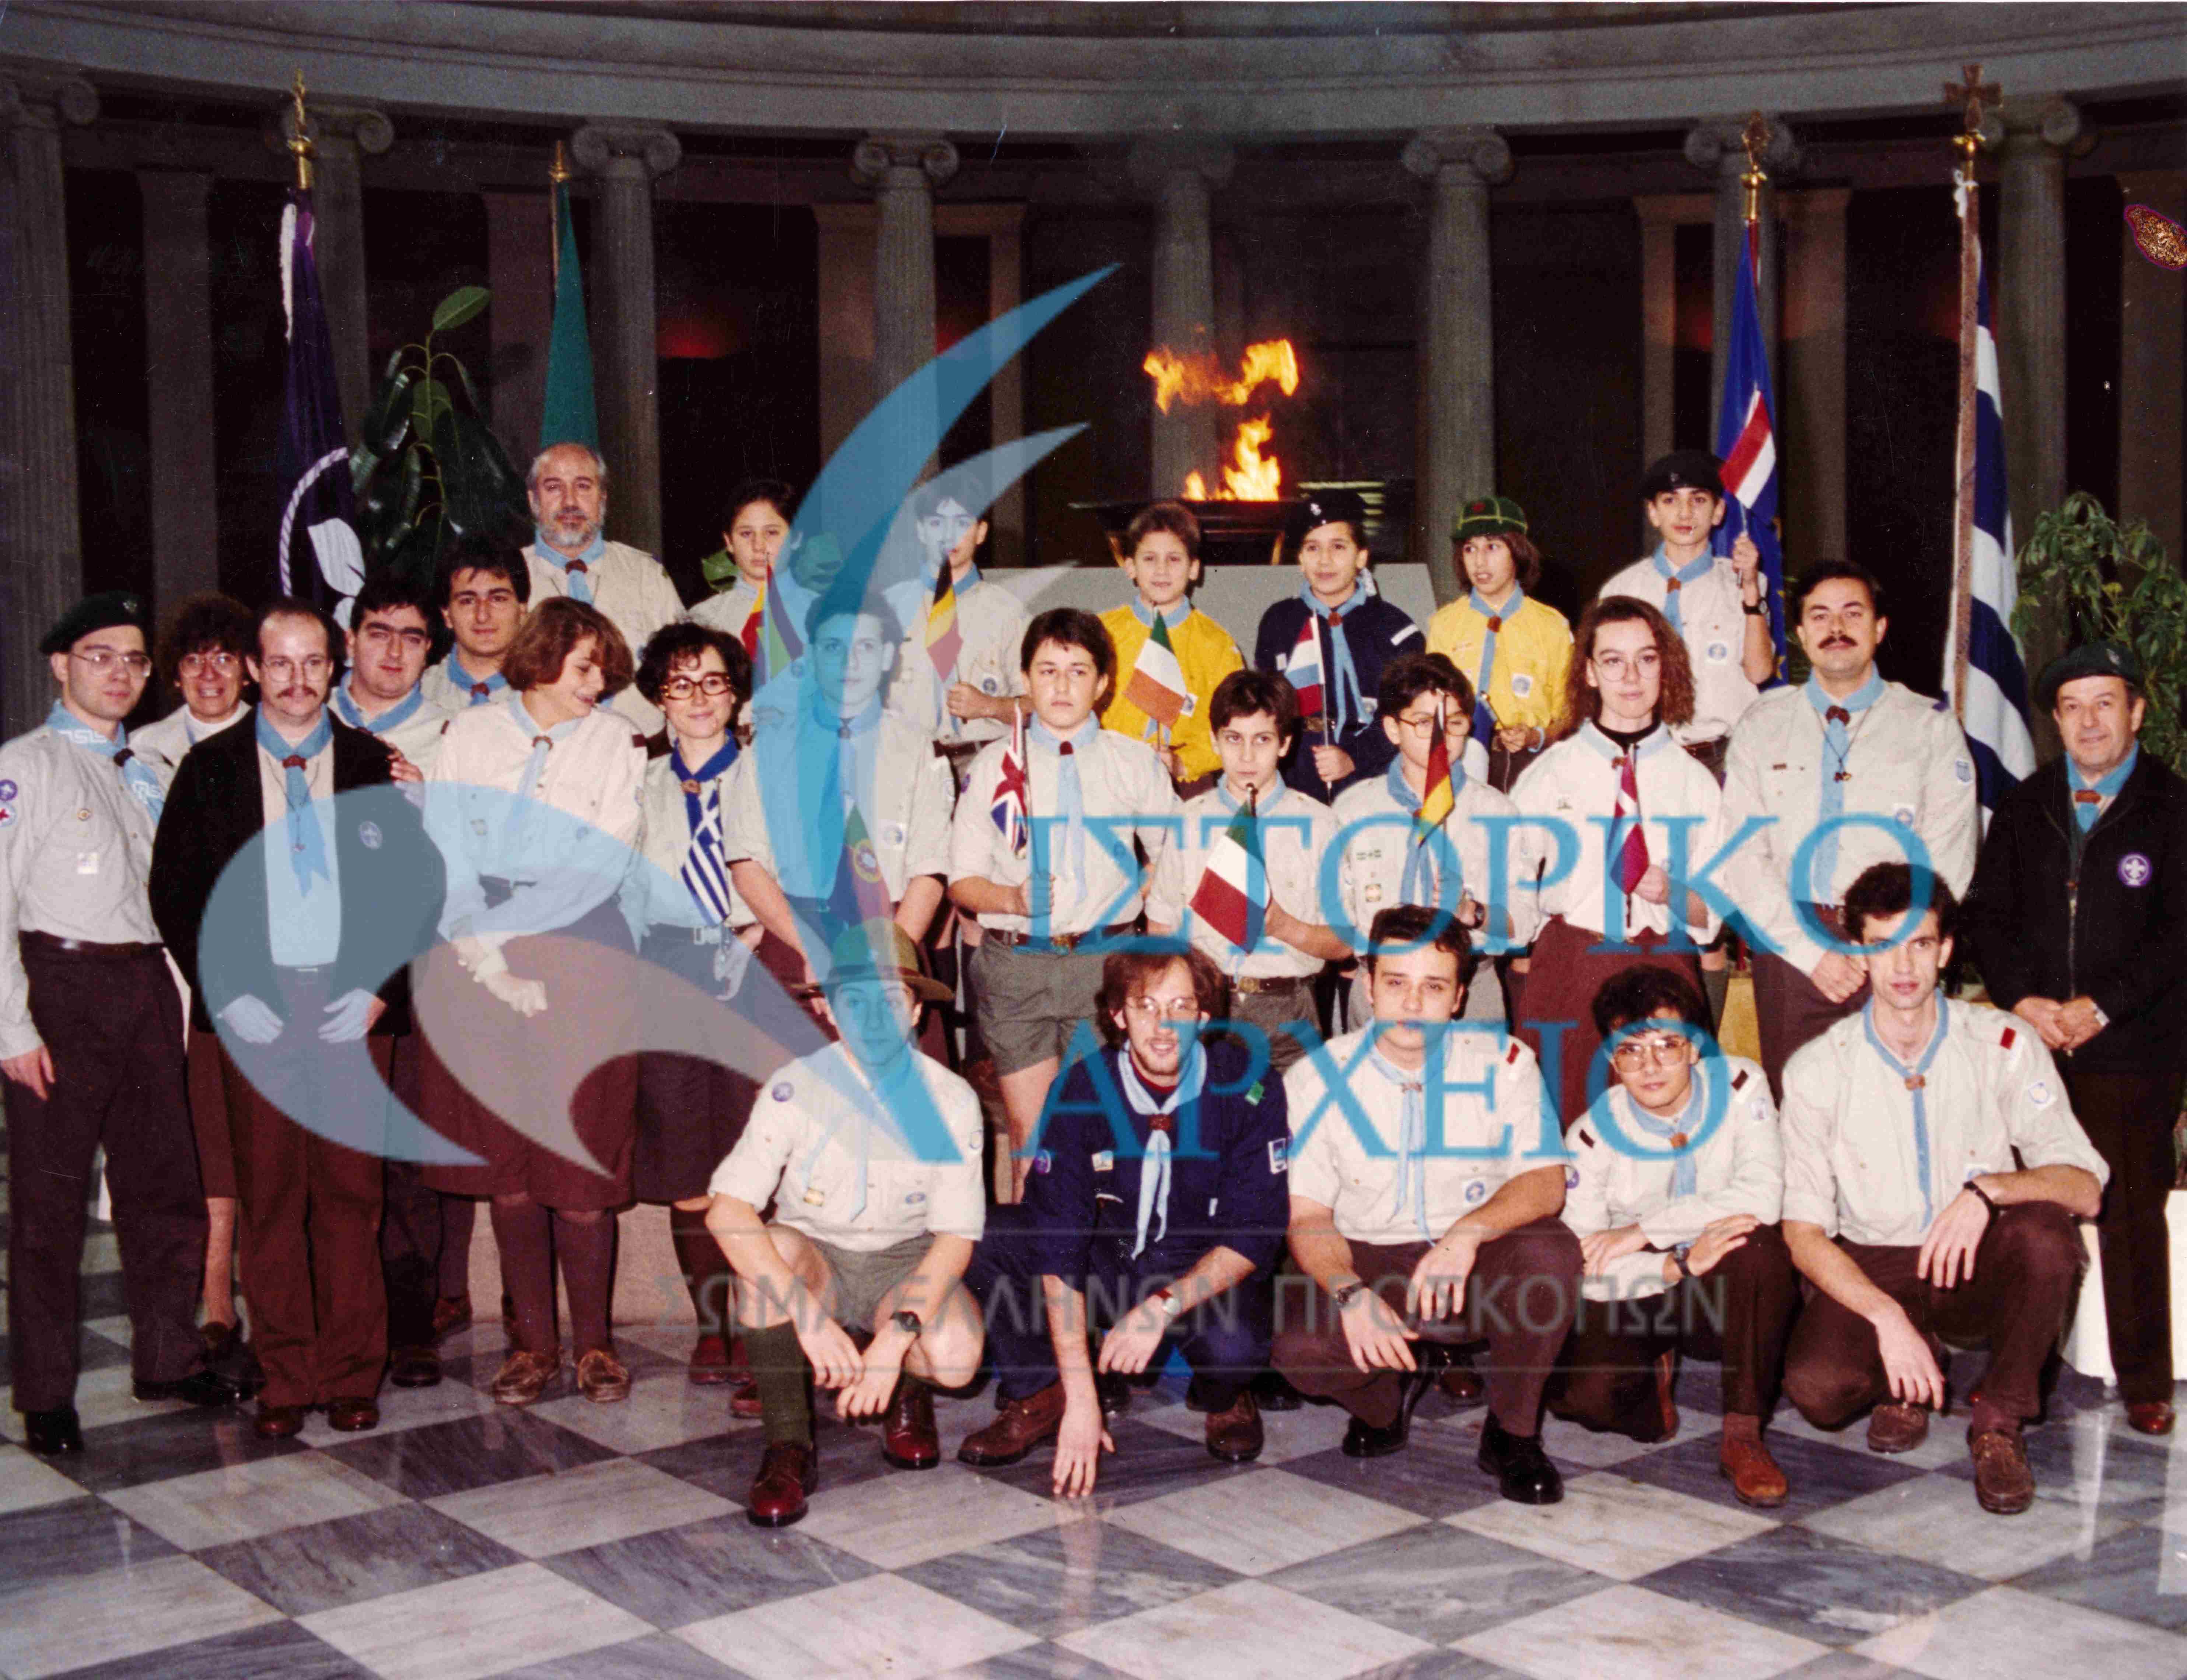 Αντιπροσωπεία Ελλήνων Προσκόπων στο Ζάππειο Μέγαρο για την Αφή της Ευρωπαϊκής Φλόγας για την Ευρωπαϊκή Ενοποίηση της τότε ΕΟΚ το 1992.